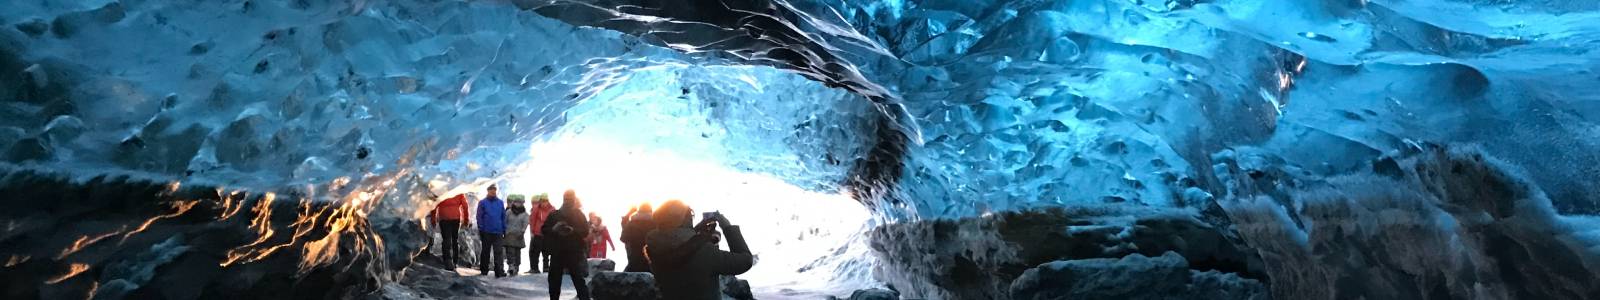 Grotten bezoeken in IJsland